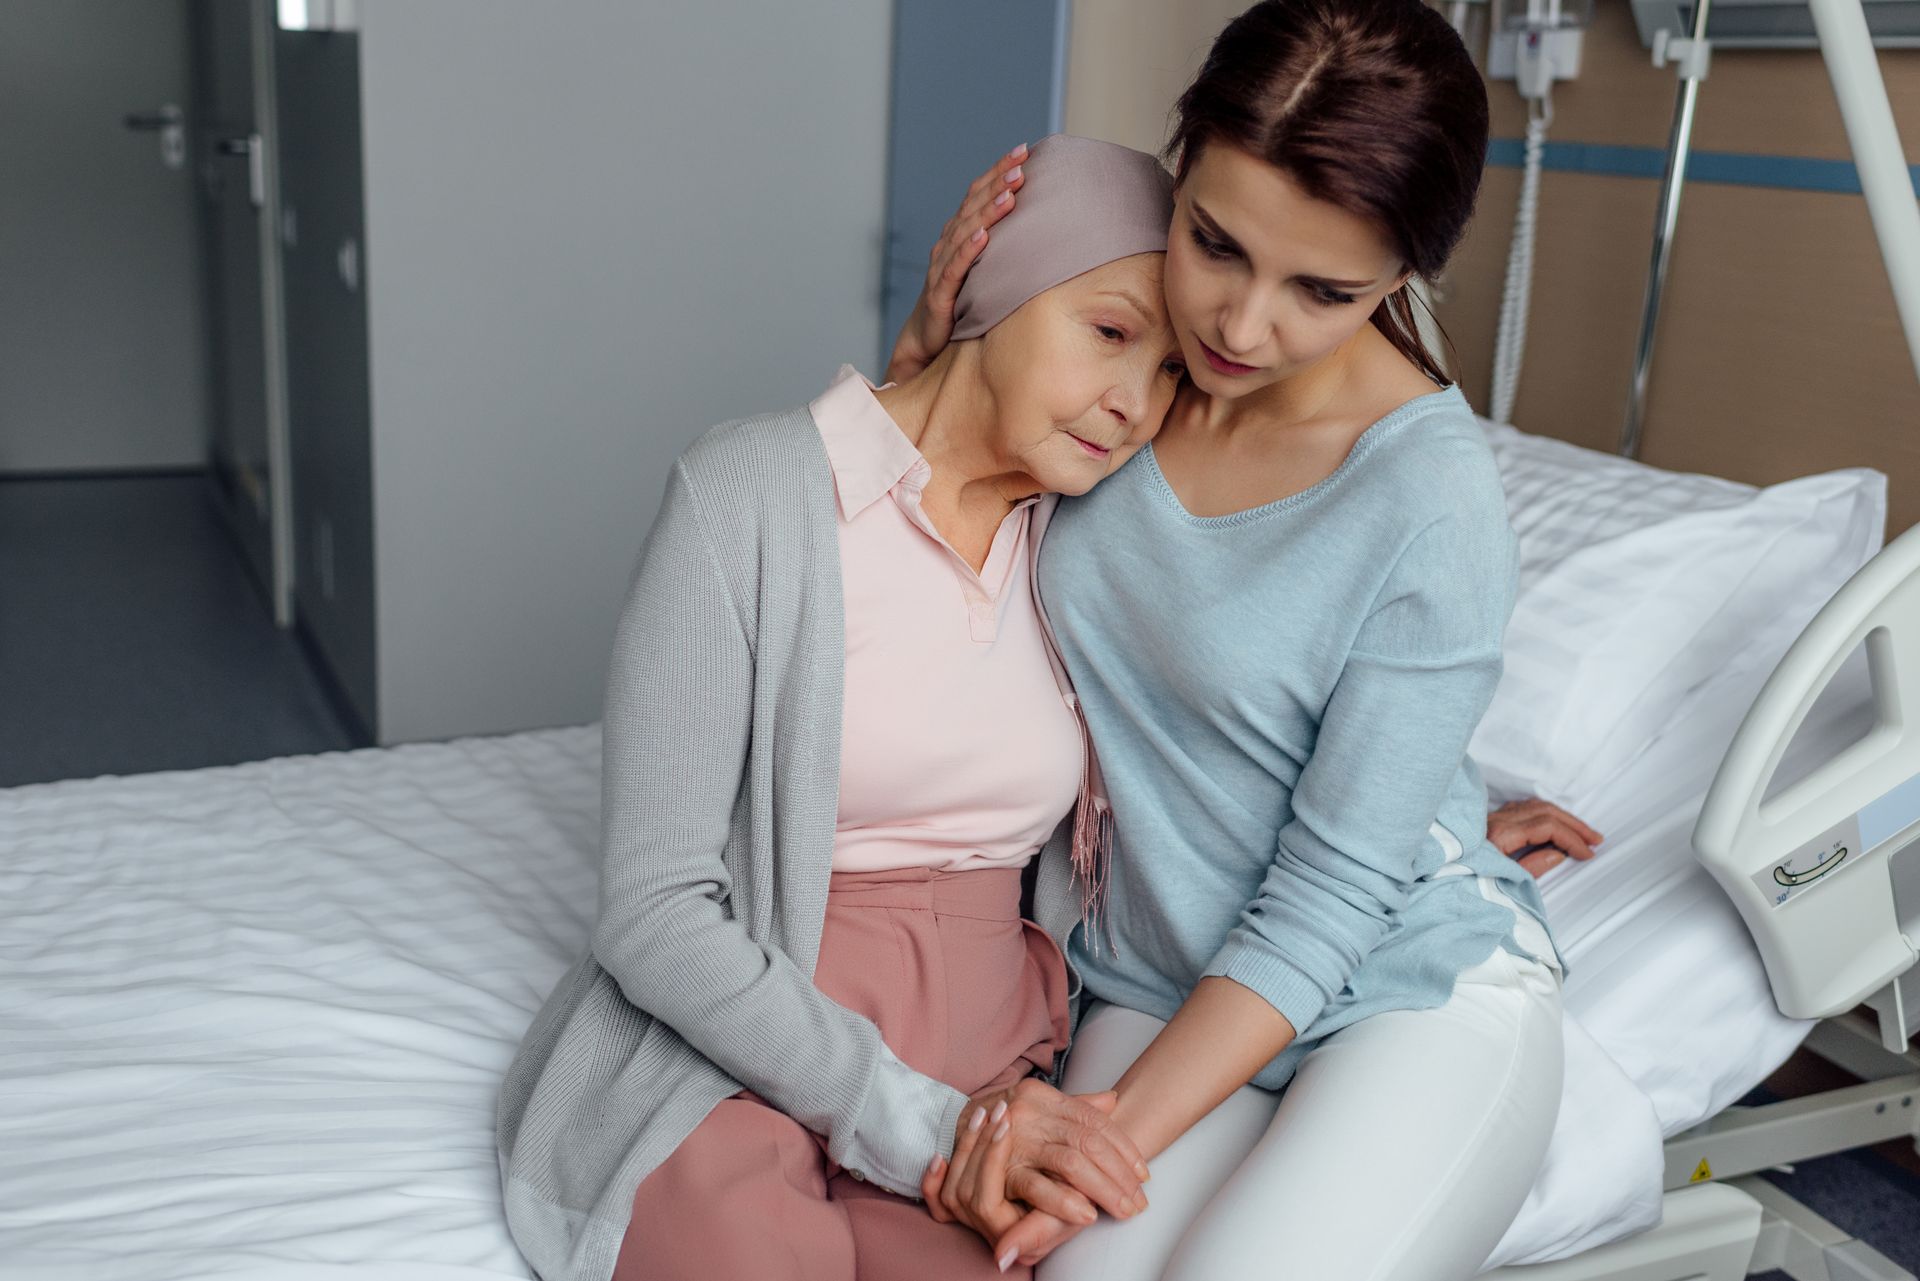 PTSS Voorbij-Holistisch herstel van PTSS en Trauma-Johan Reinhoudt-Jonge vrouw troost senior vrouw met kanker-zittend op rand ziekenhuisbed